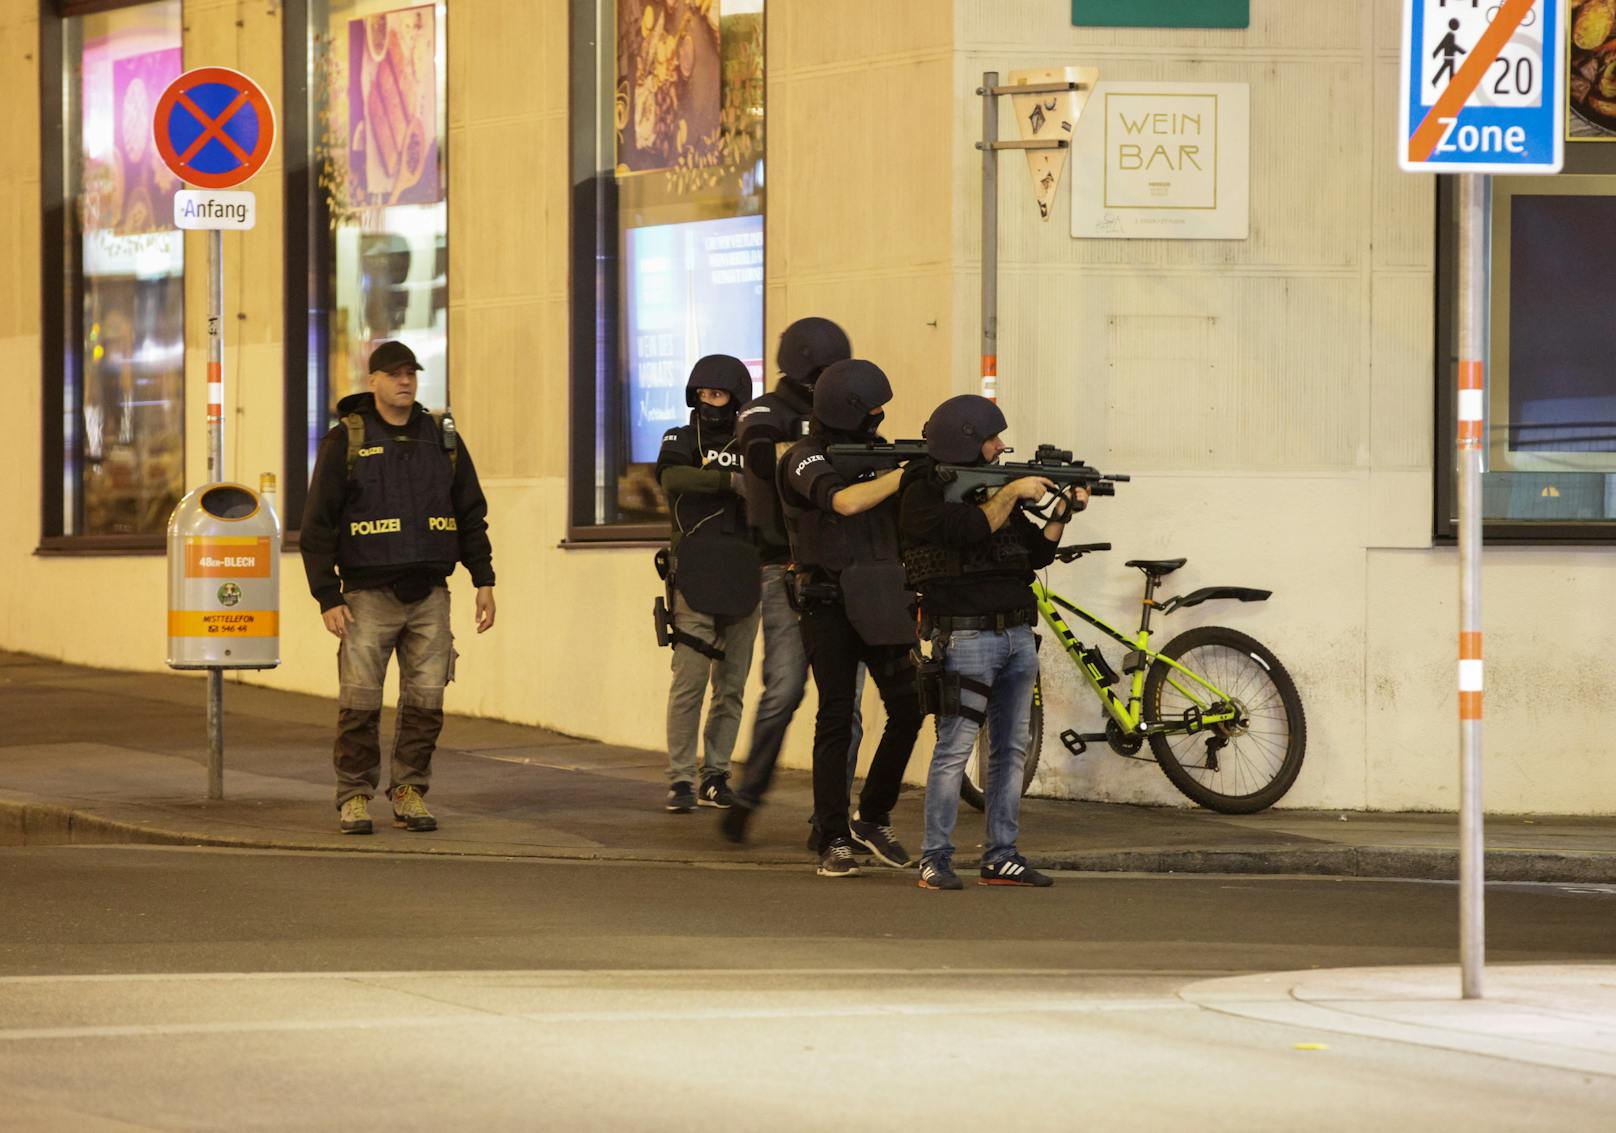 Vier Tote und viele teils schwer Verletzte – das ist die traurige Bilanz eines Terroranschlags in der Wiener Innenstadt.